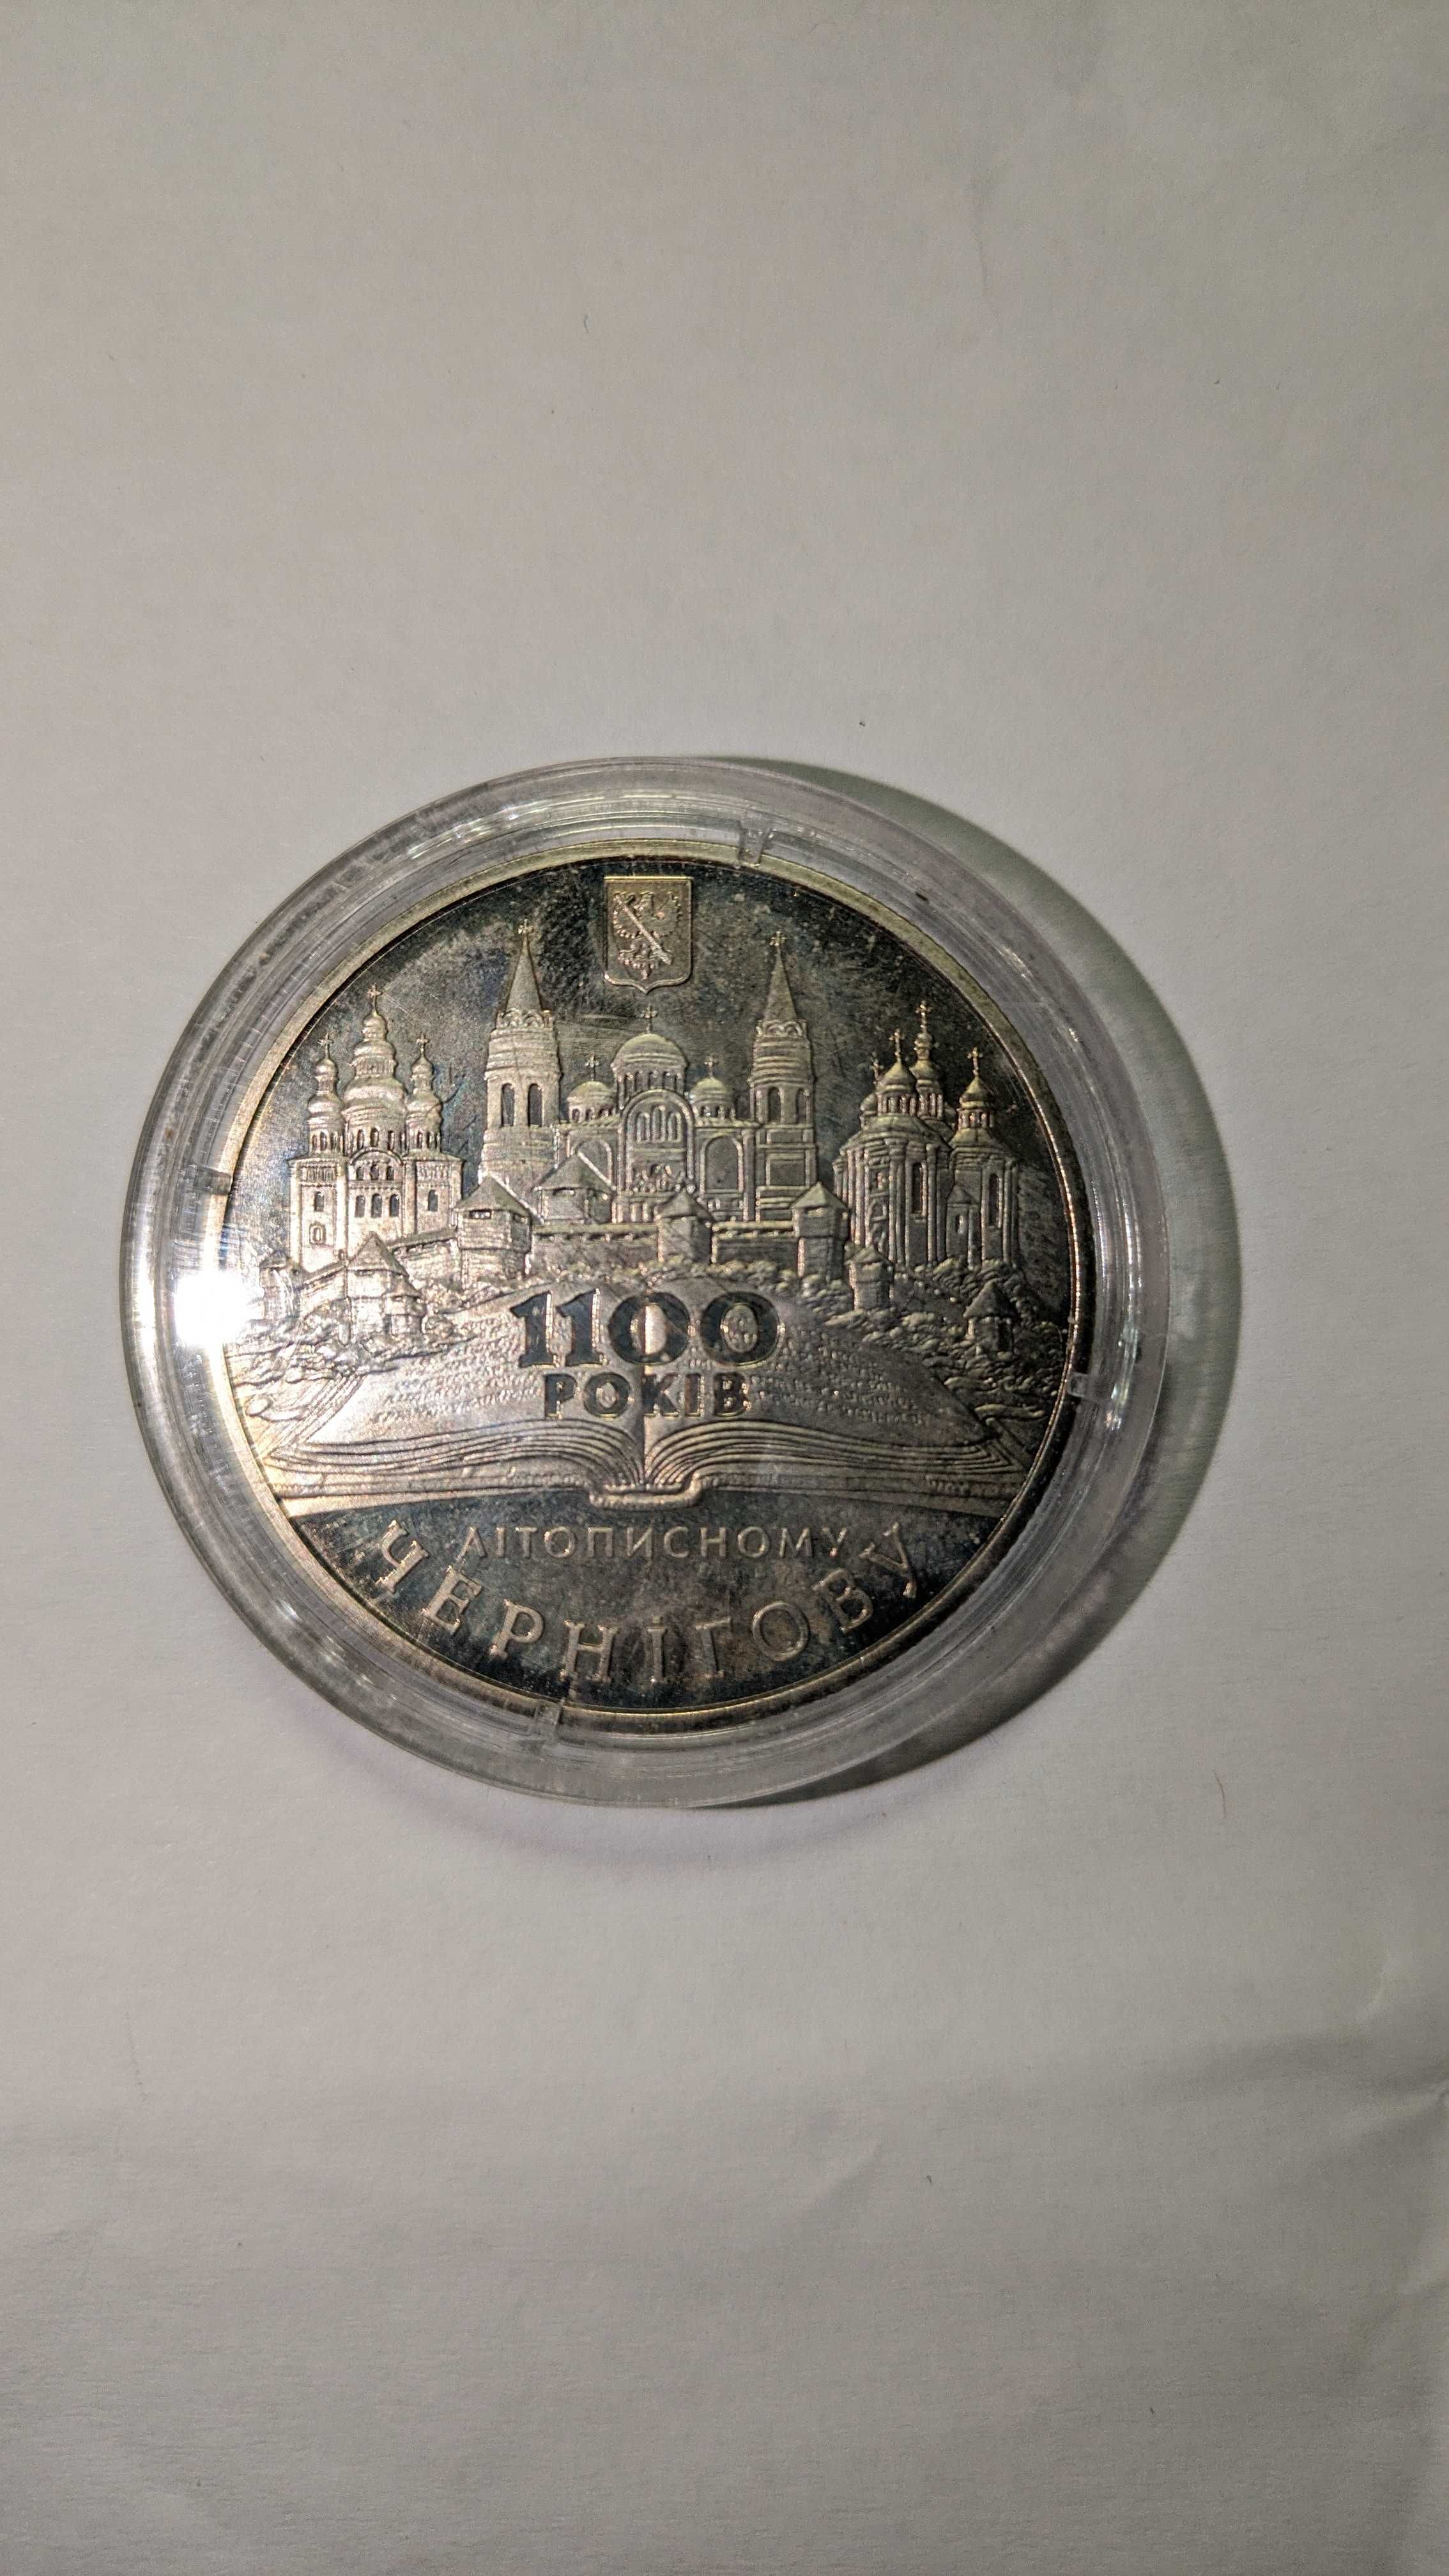 Ювілейна монета України 5 гривень Чернігову 1100 років 2007 року